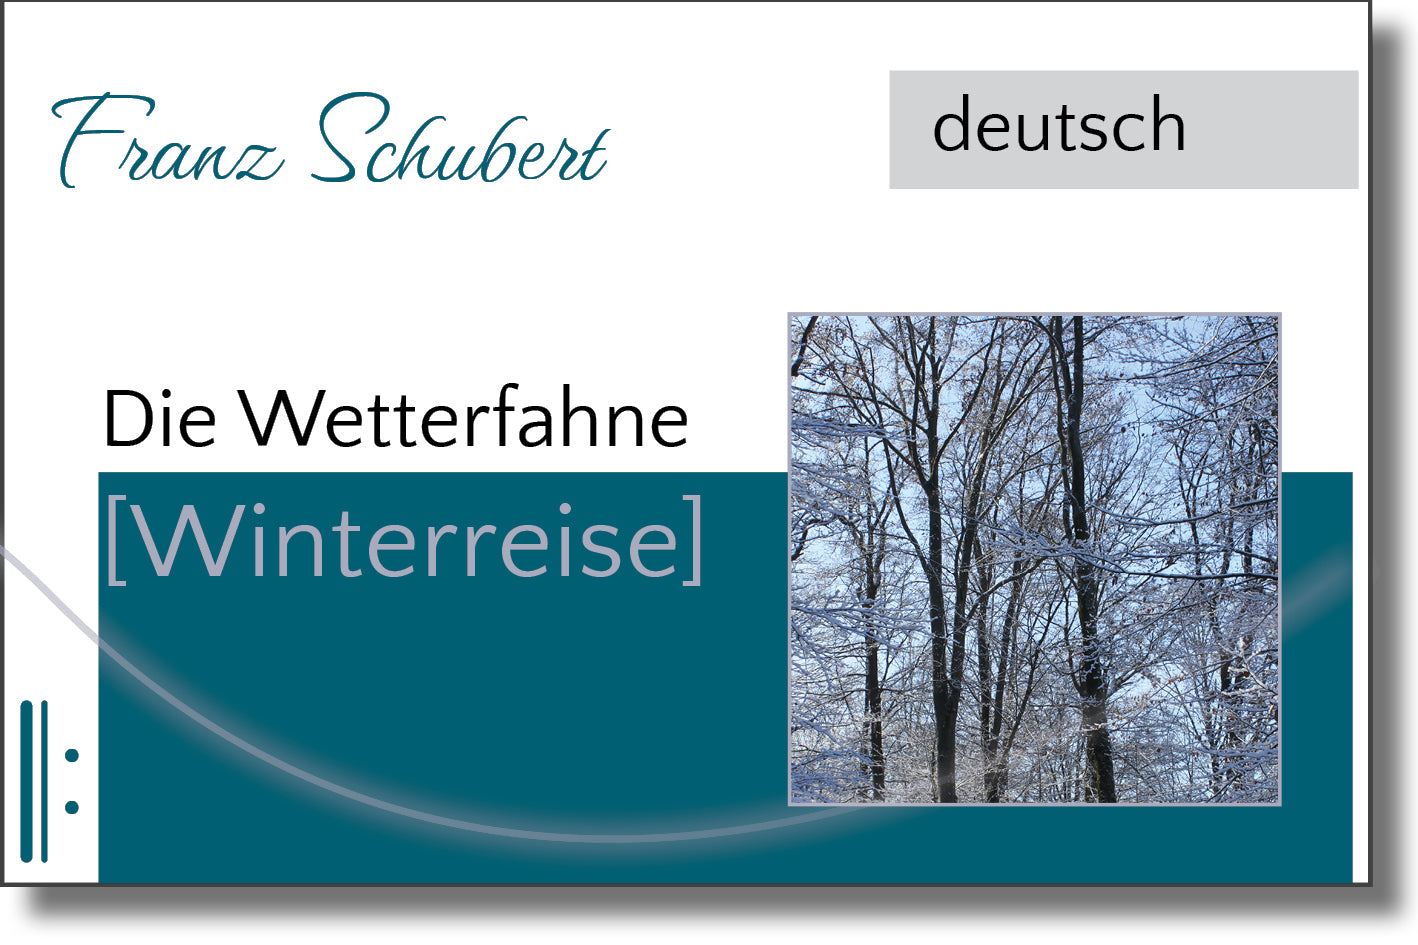 Schubert - Die Wetterfahne